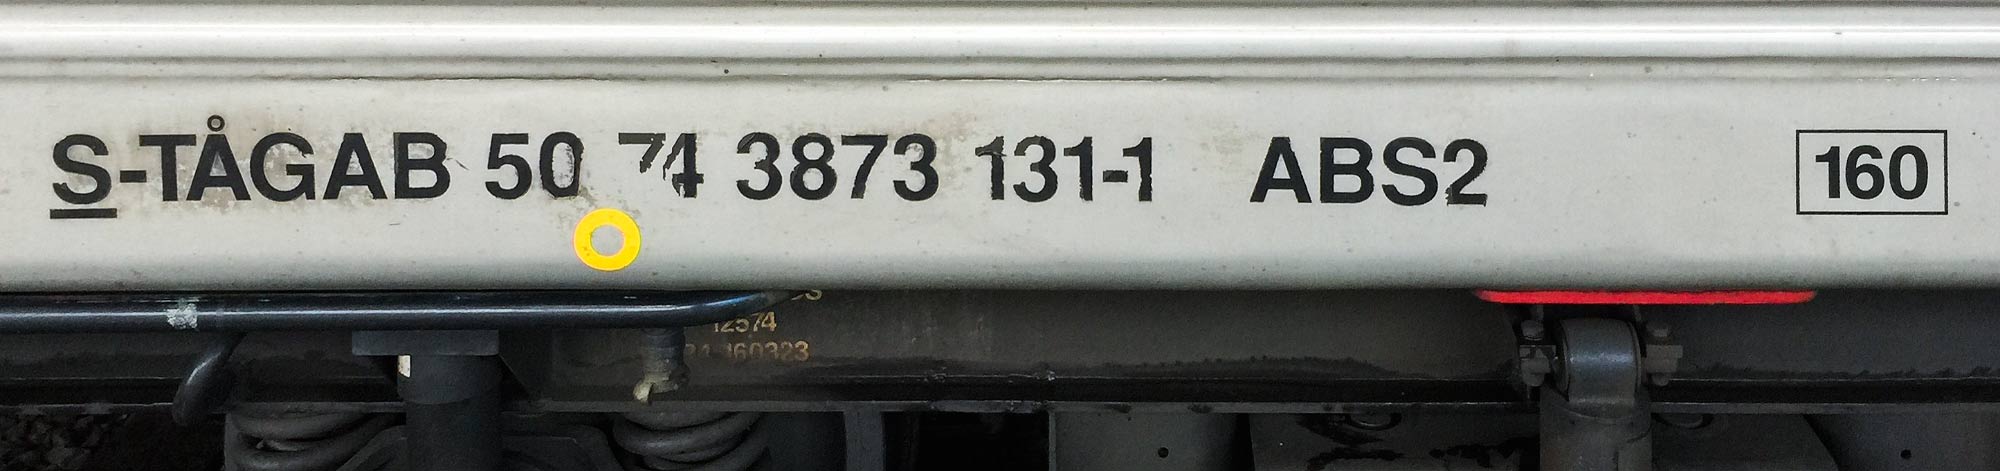 Littera och nummer på en ABS2-vagn